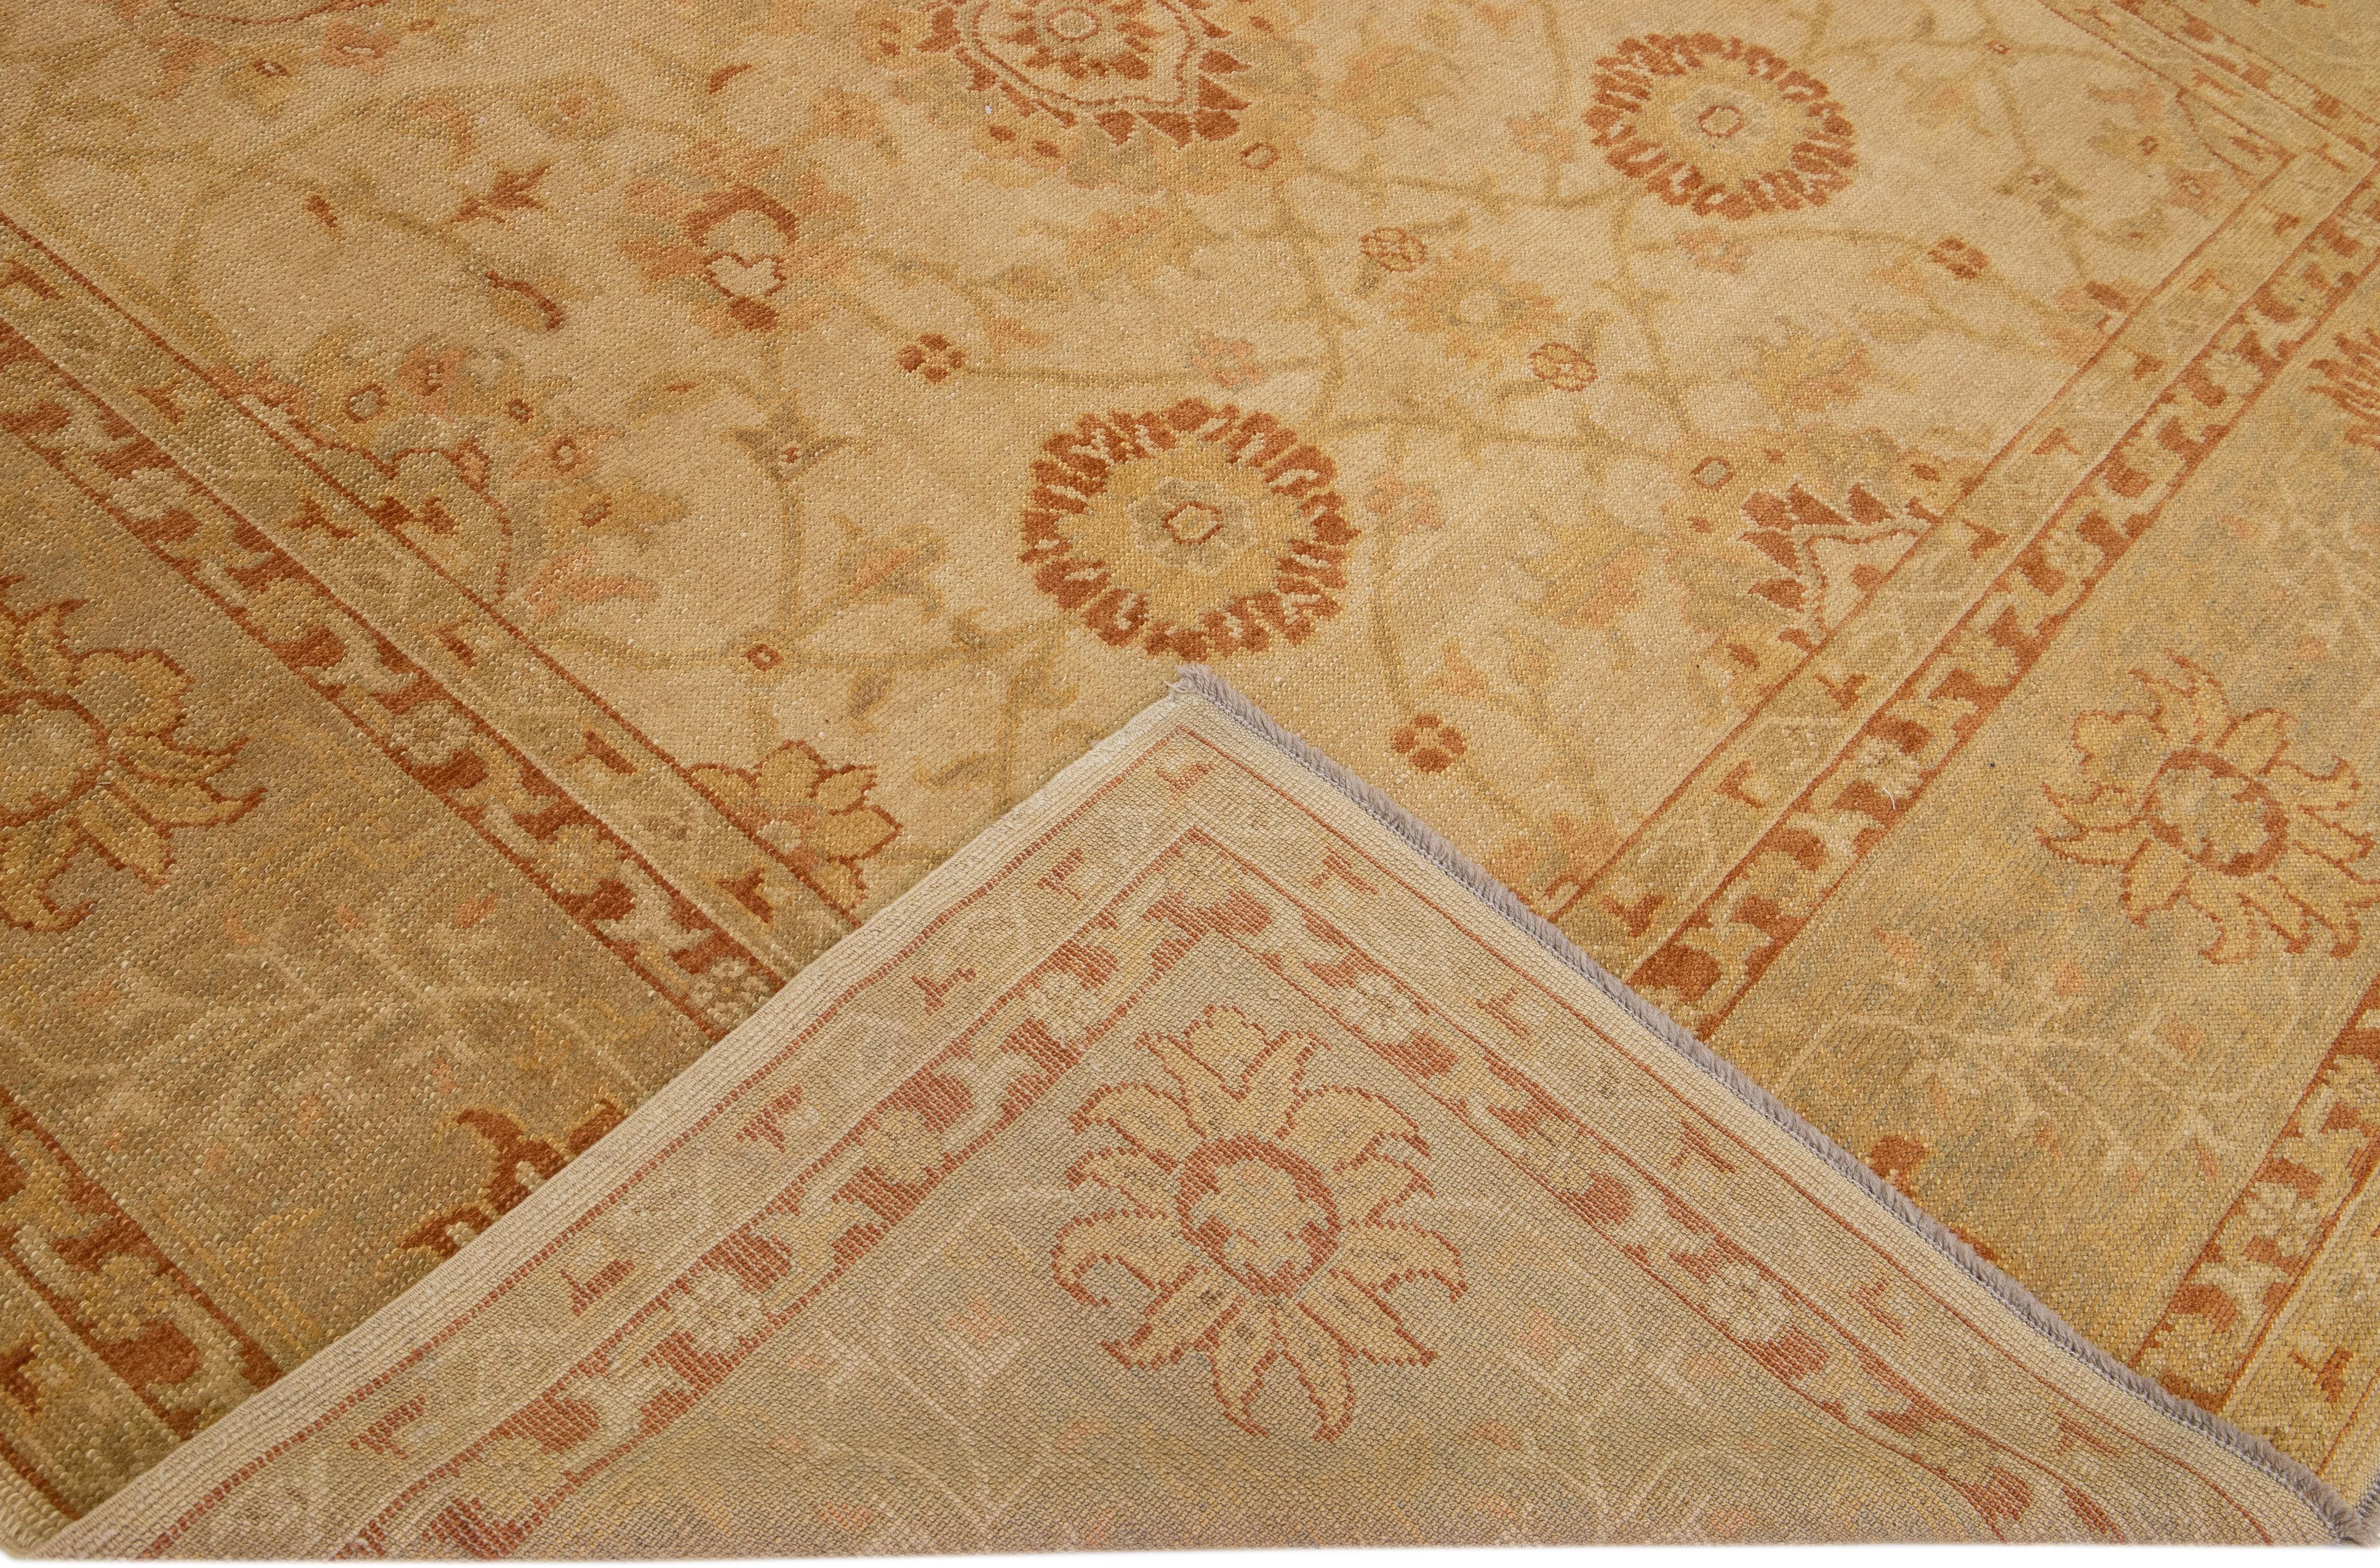 Schöner moderner türkischer handgeknüpfter Wollteppich mit einem hellbraunen Feld. Dieser Teppich hat einen grauen Rahmen mit mehrfarbigen Akzenten in einem wunderschönen, großflächigen Blumenmuster.

Dieser Teppich misst: 9'6